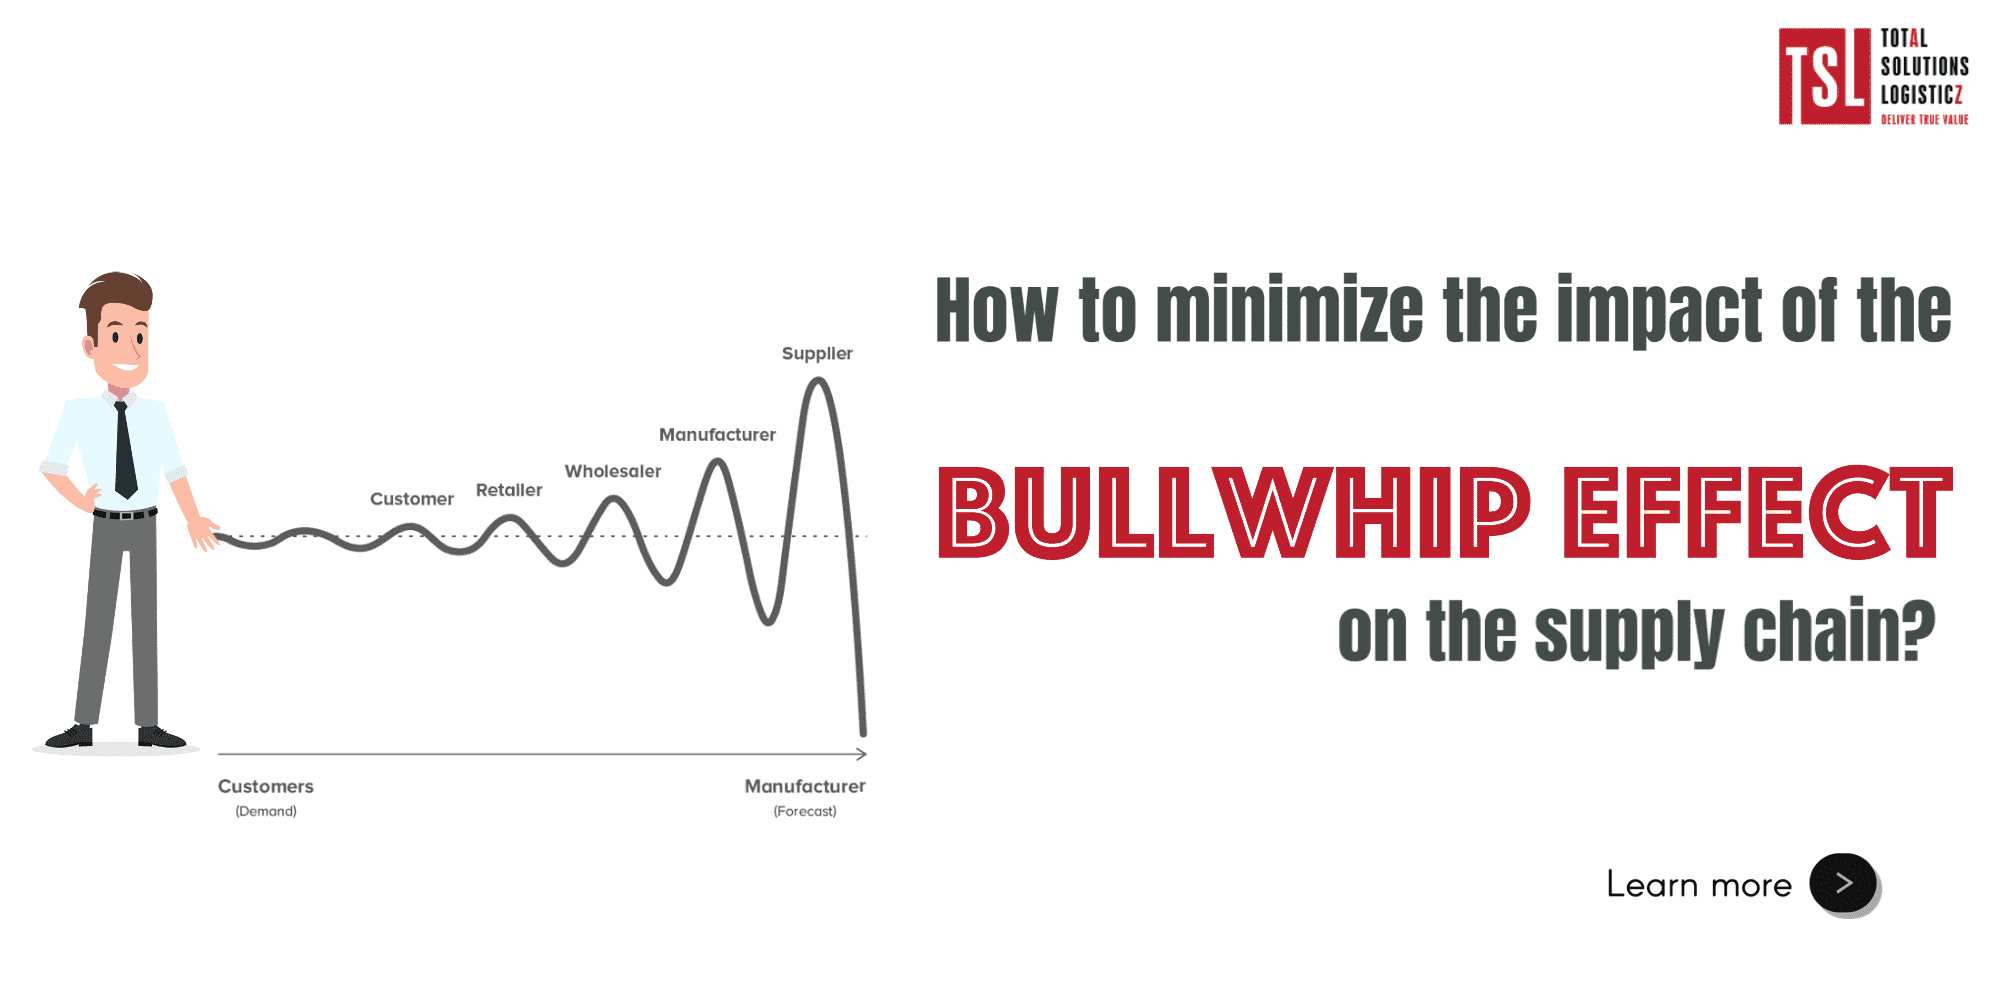 Cách để giảm thiểu tác động của hiệu ứng Bullwhip lên chuỗi cung ứng?